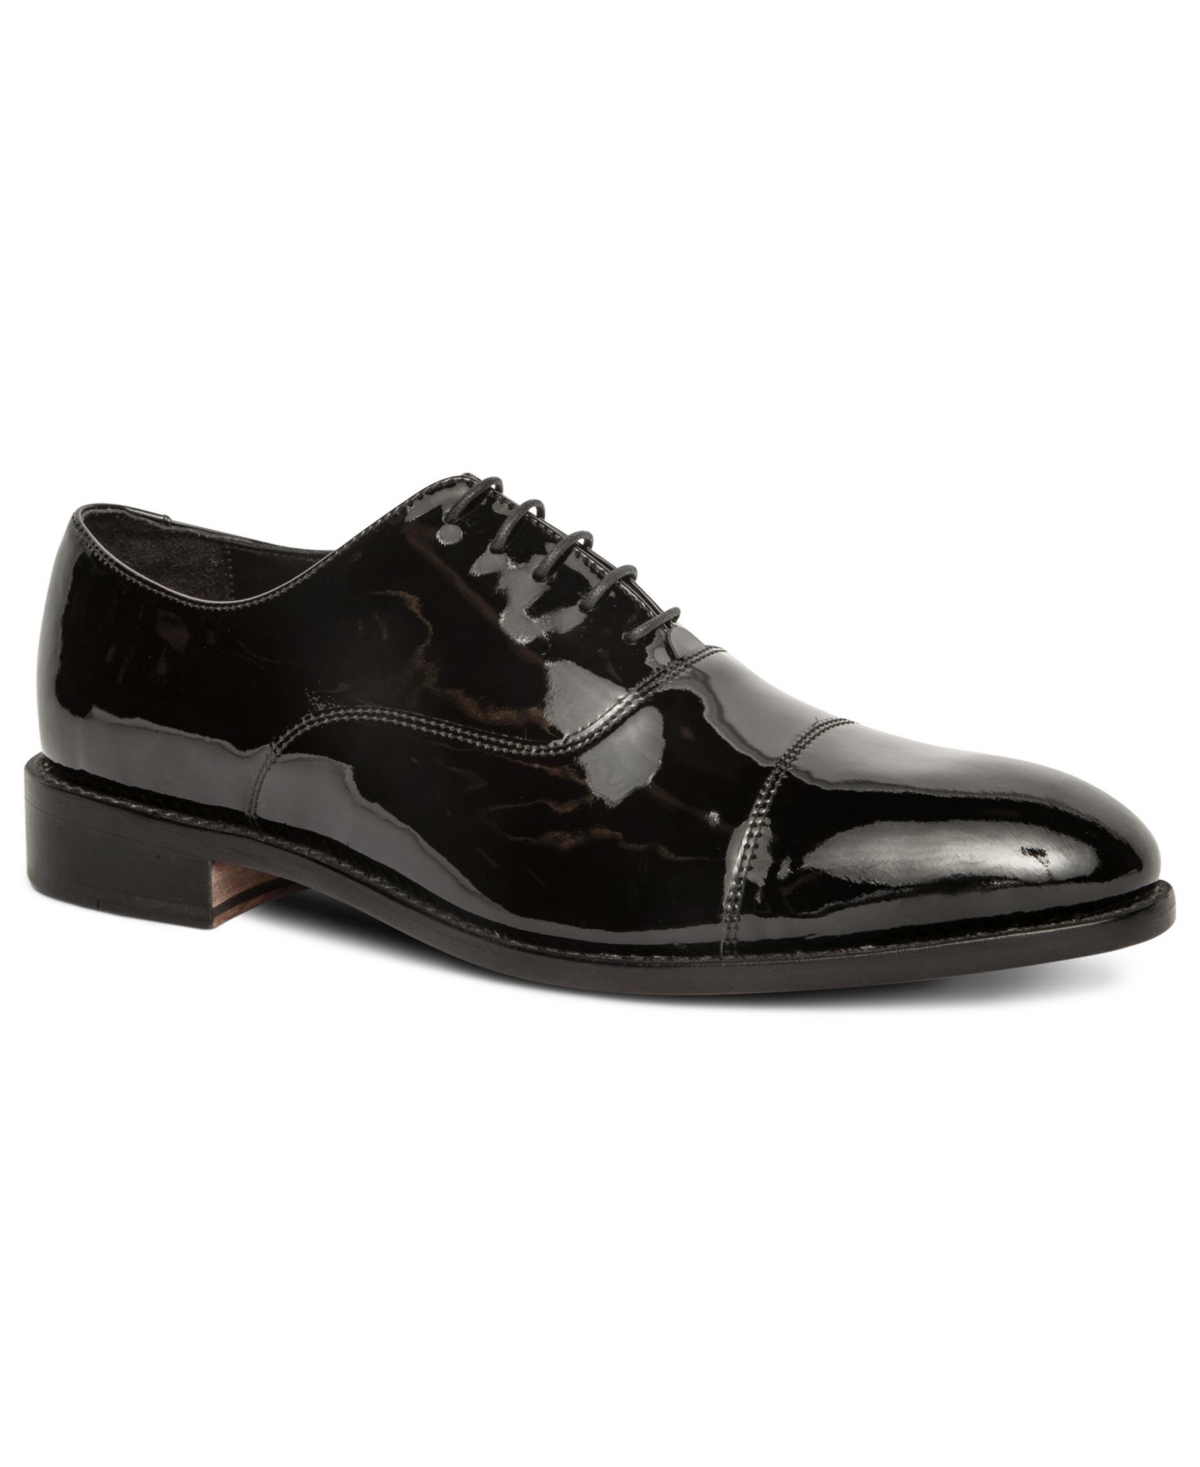 Men's Clinton Tux Cap-Toe Oxford Leather Dress Shoes - Black